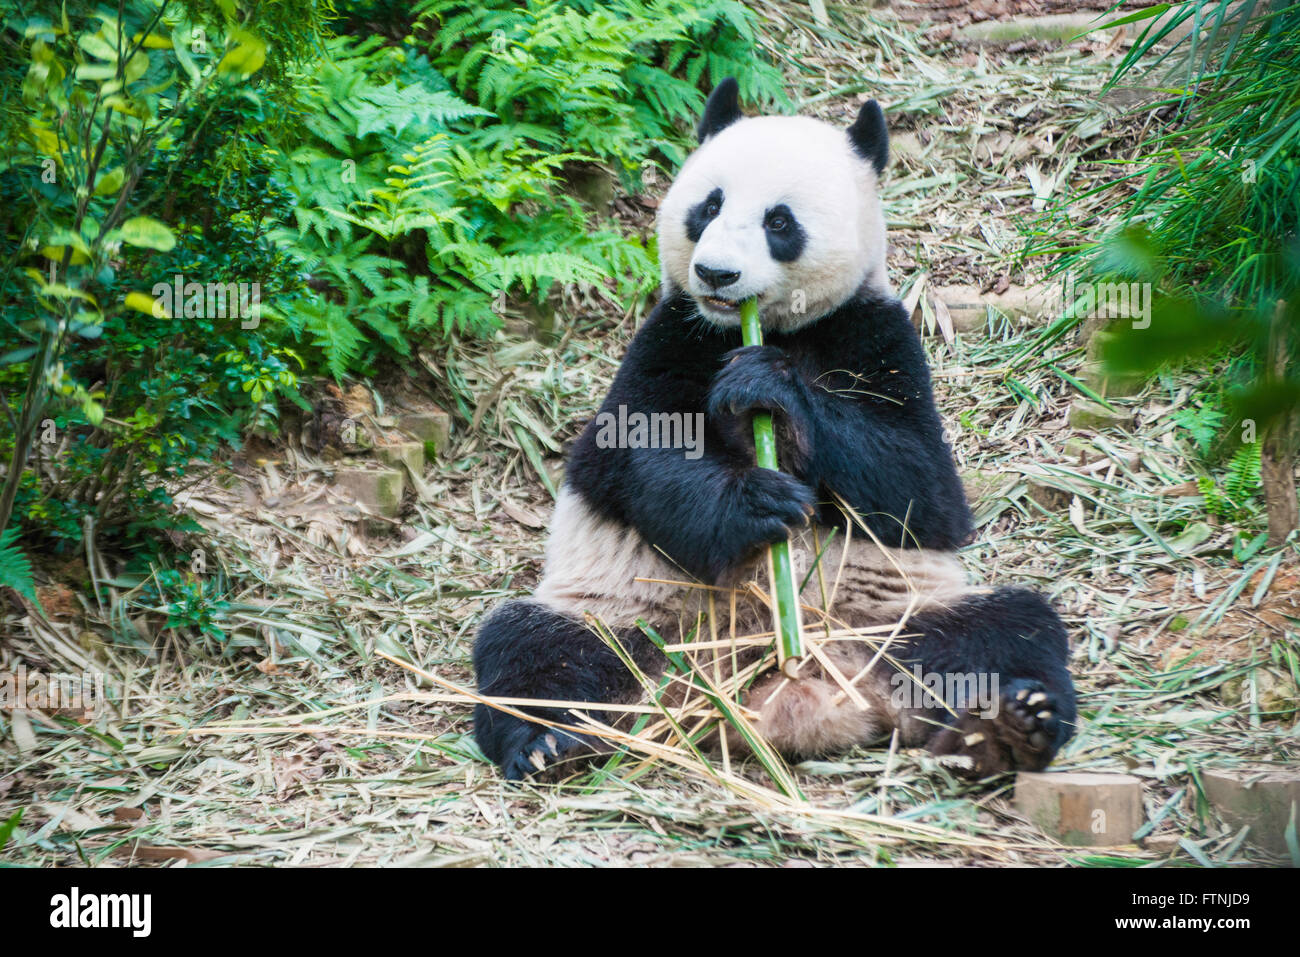 panda china Stock Photo